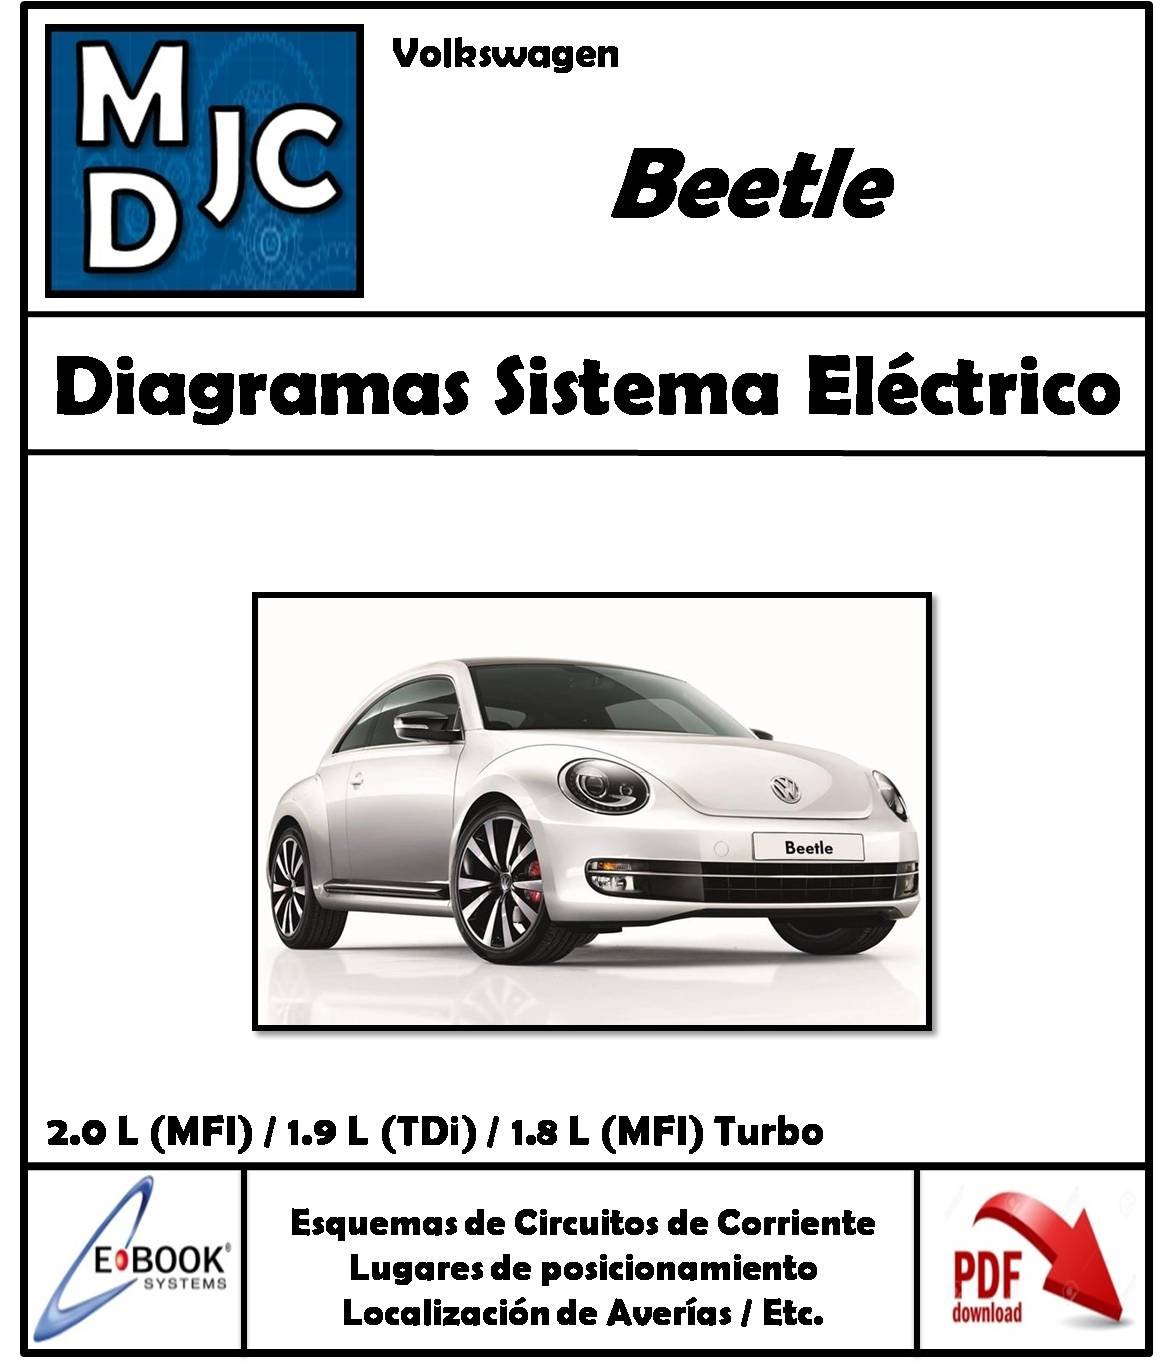 VolksWagen  ( VW ) Beetle  / New Beetle 1998 - 2011